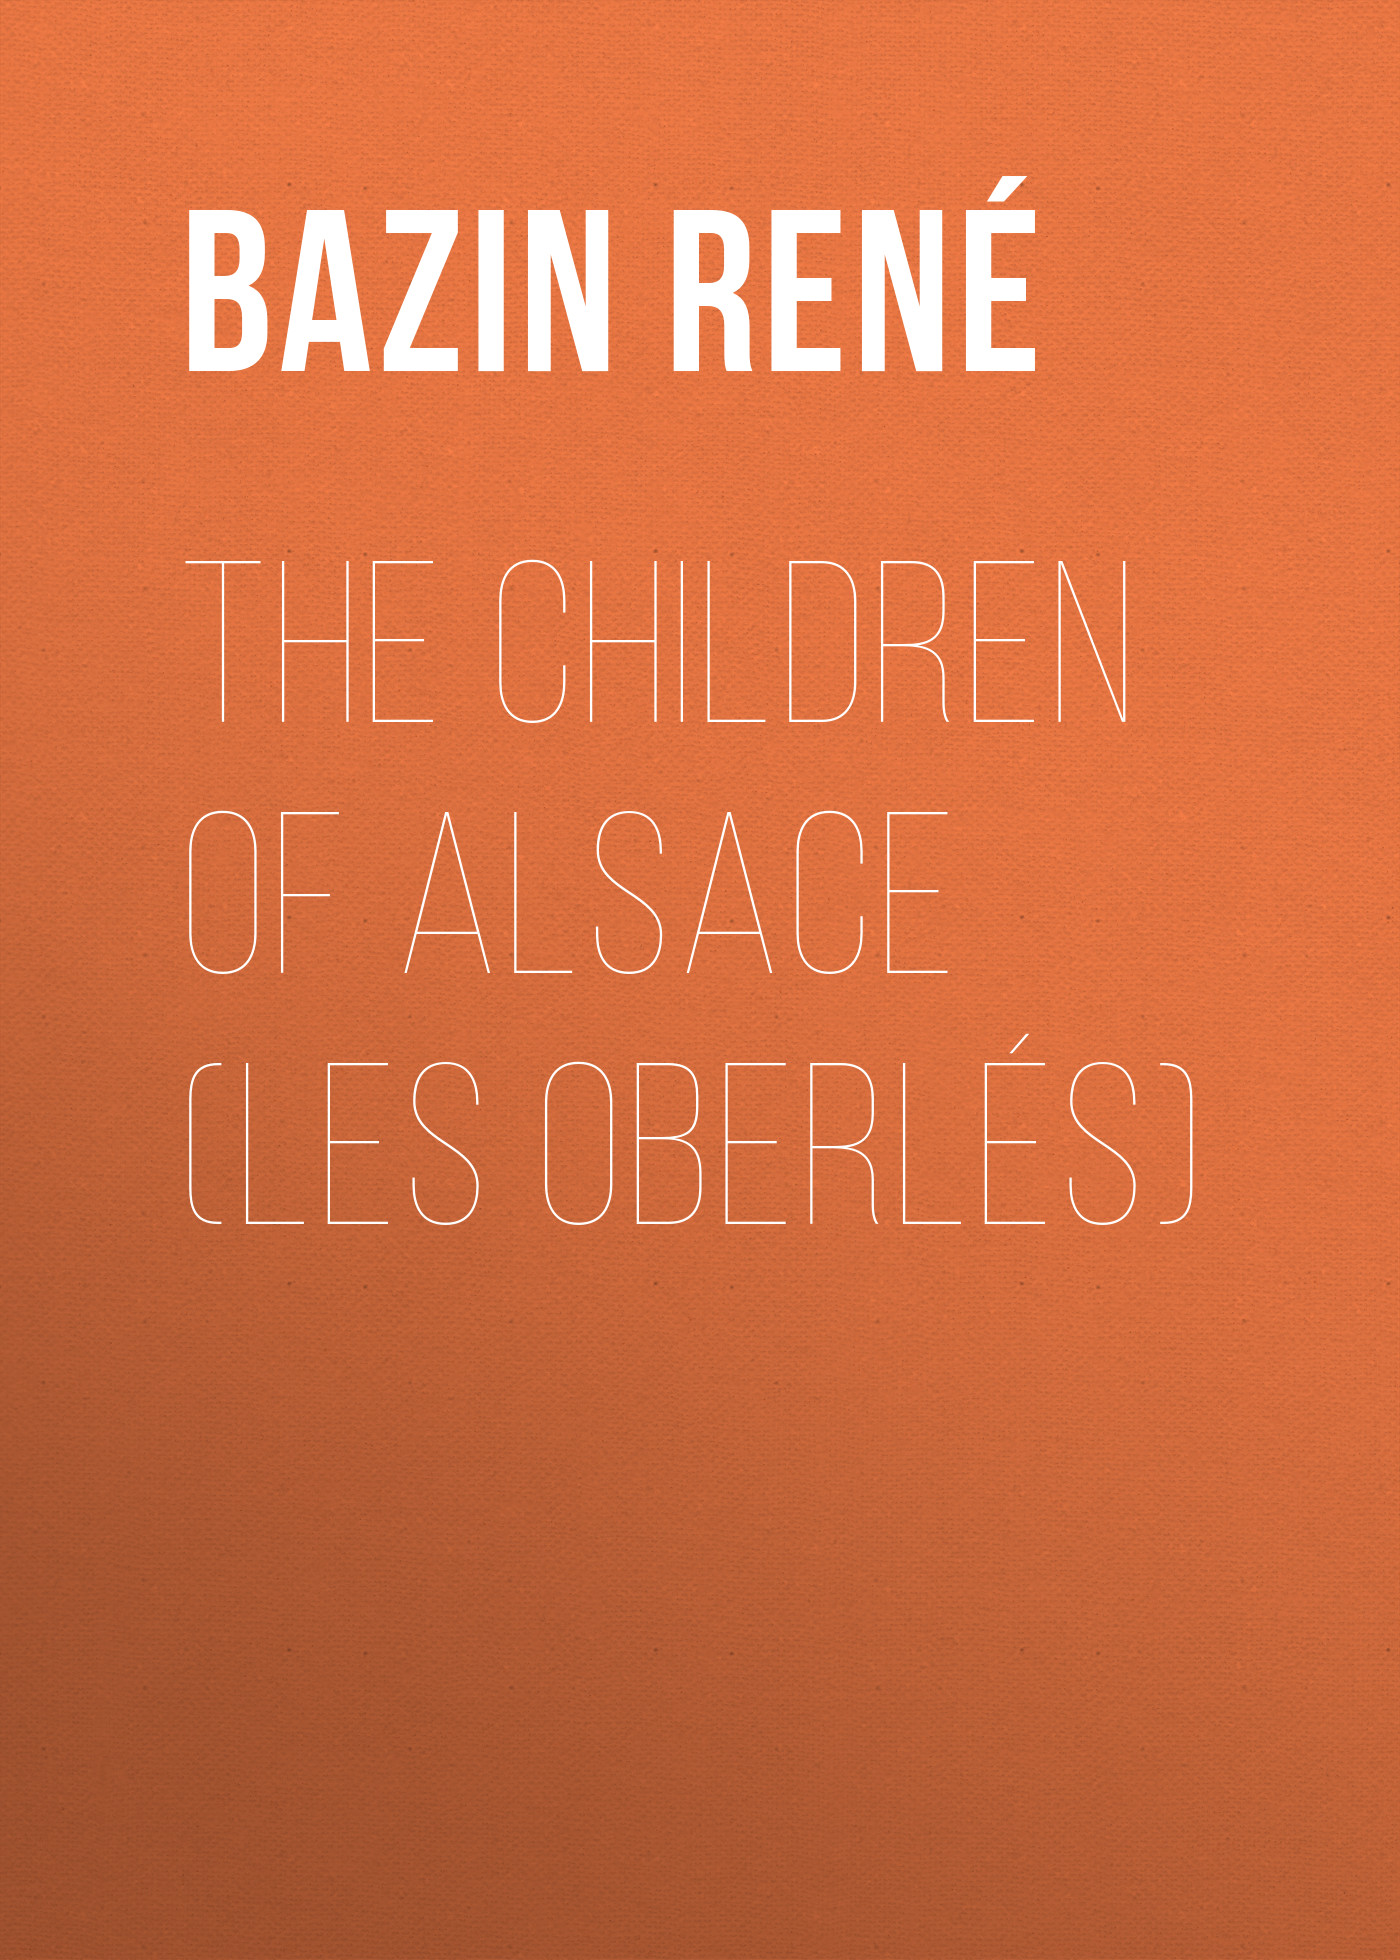 Книга The Children of Alsace (Les Oberlés) из серии , созданная René Bazin, может относится к жанру Иностранные языки, Зарубежная старинная литература, Зарубежная классика. Стоимость электронной книги The Children of Alsace (Les Oberlés) с идентификатором 24177652 составляет 0.90 руб.